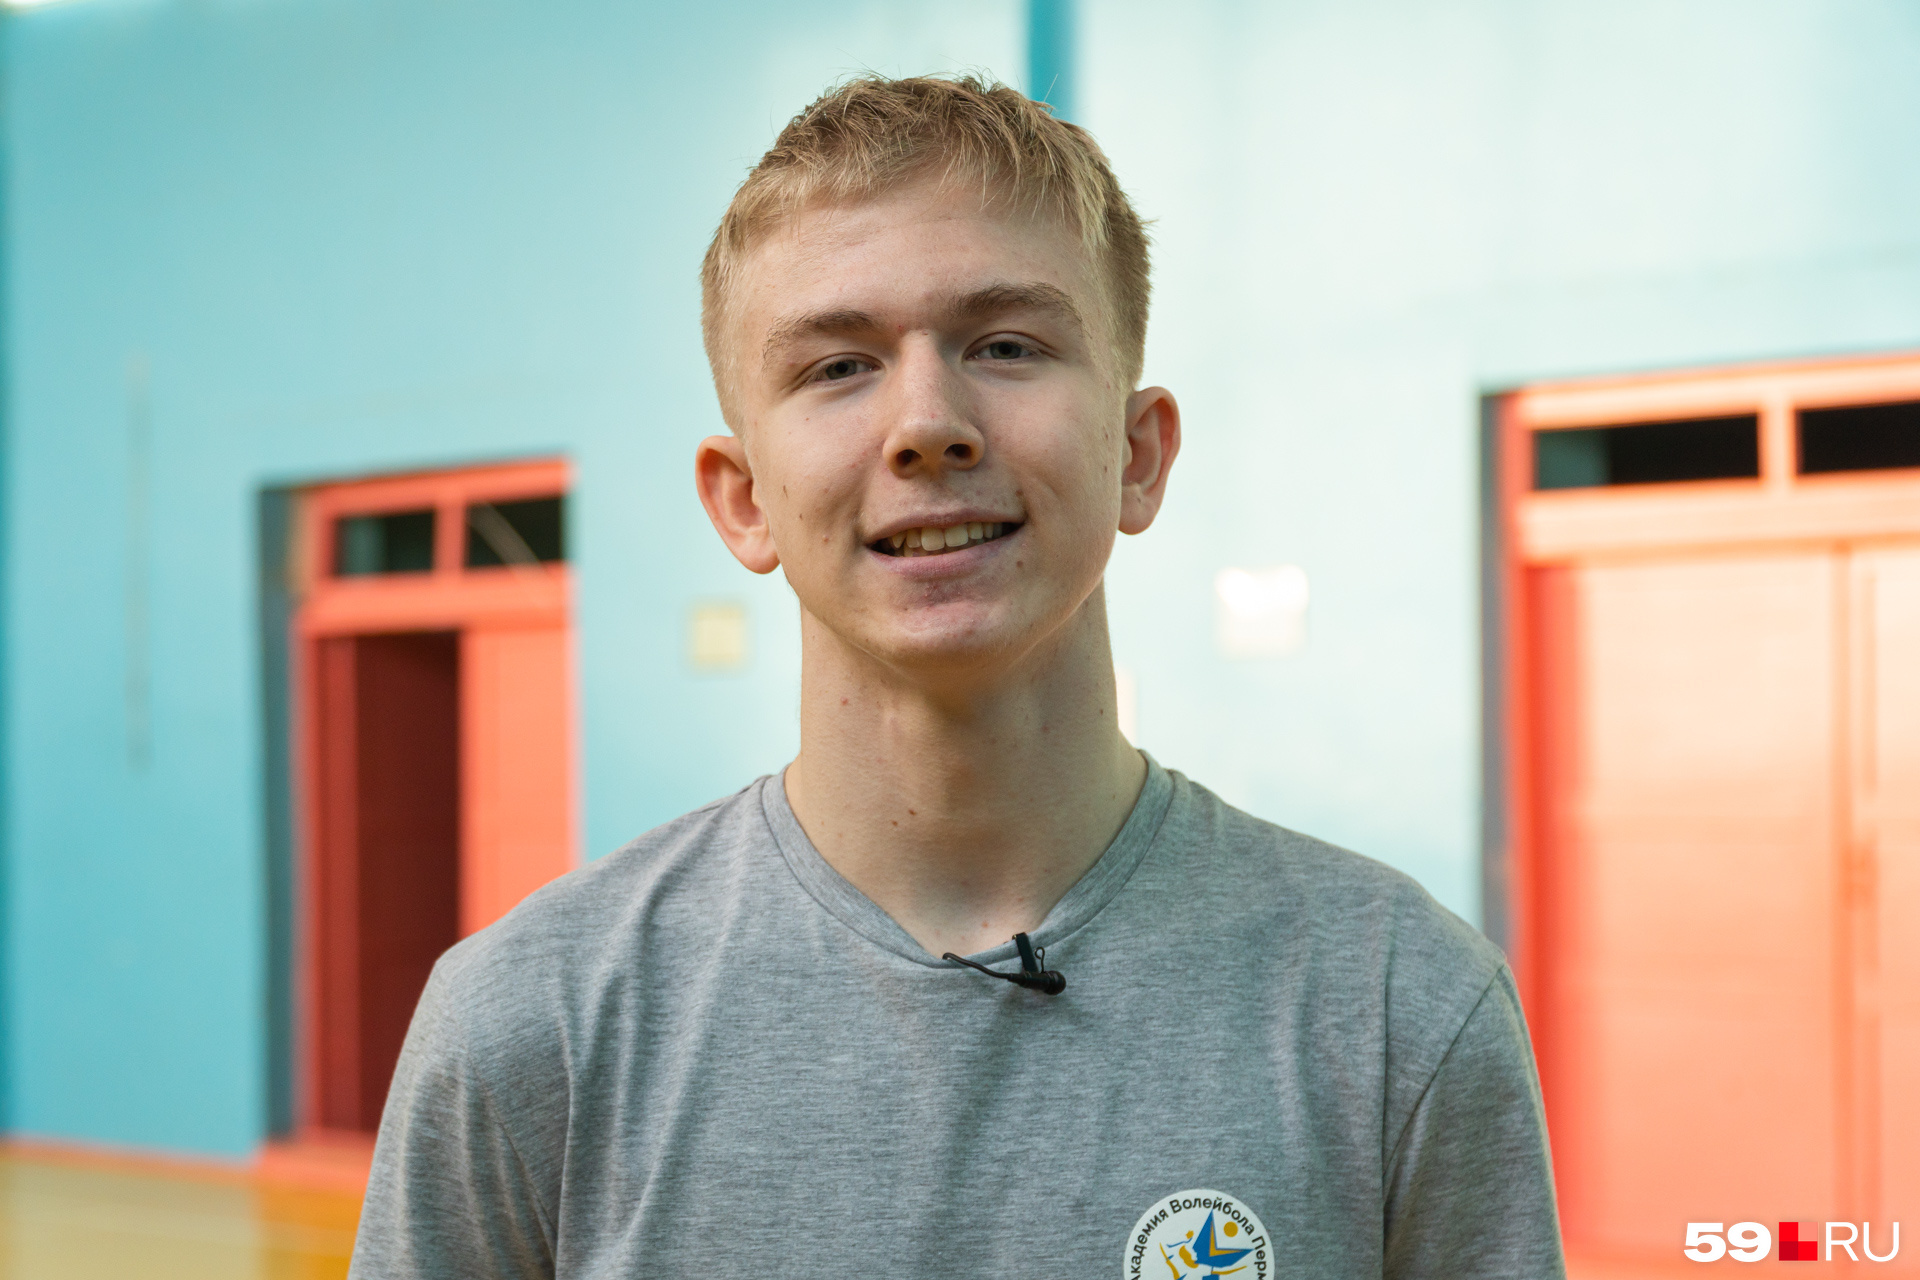 Ярослав — отличный игрок и позитивный человек